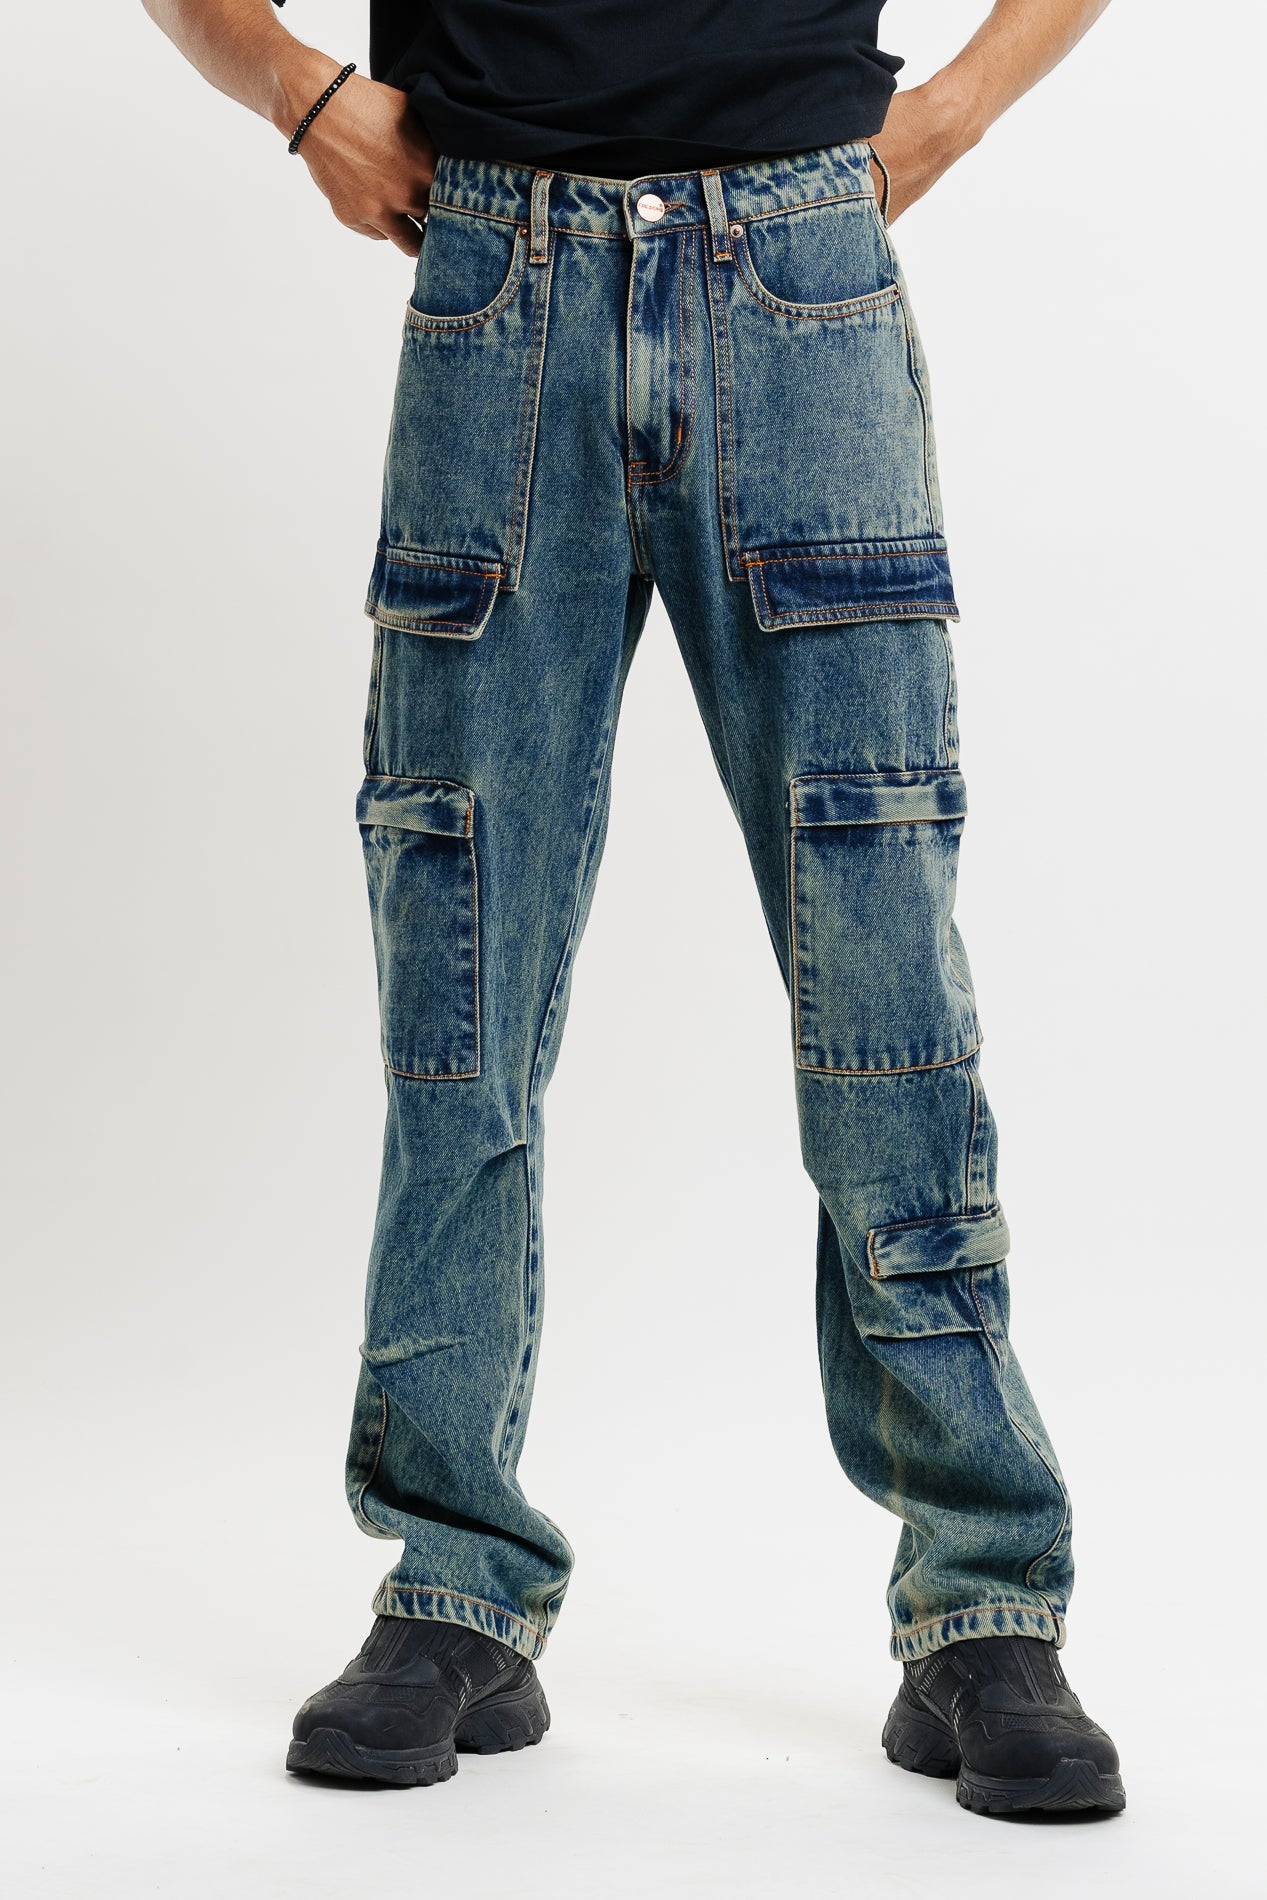 Men's Vintage Utility Cargo Jeans